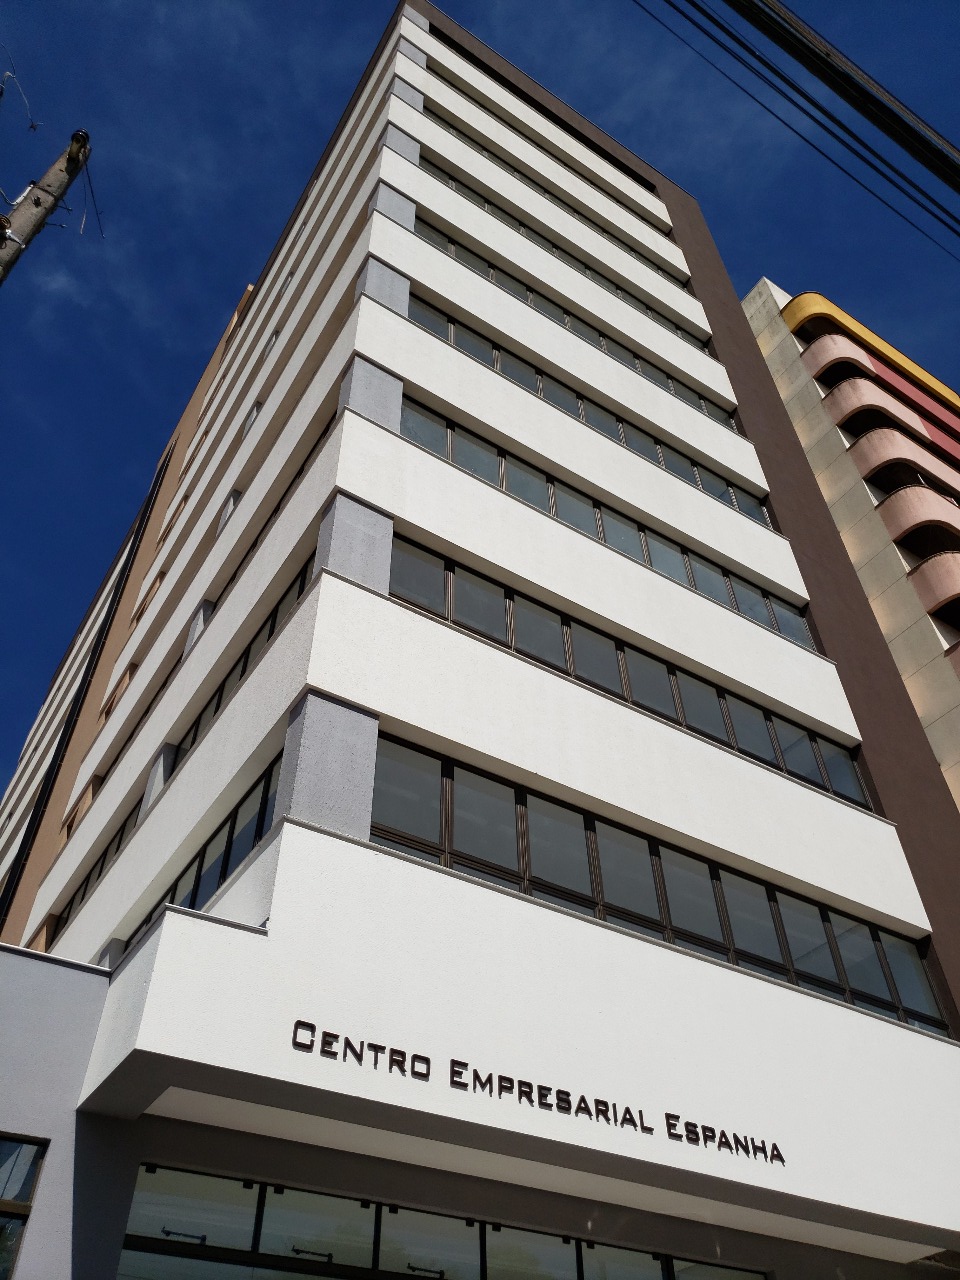 Centro Empresarial Espanha